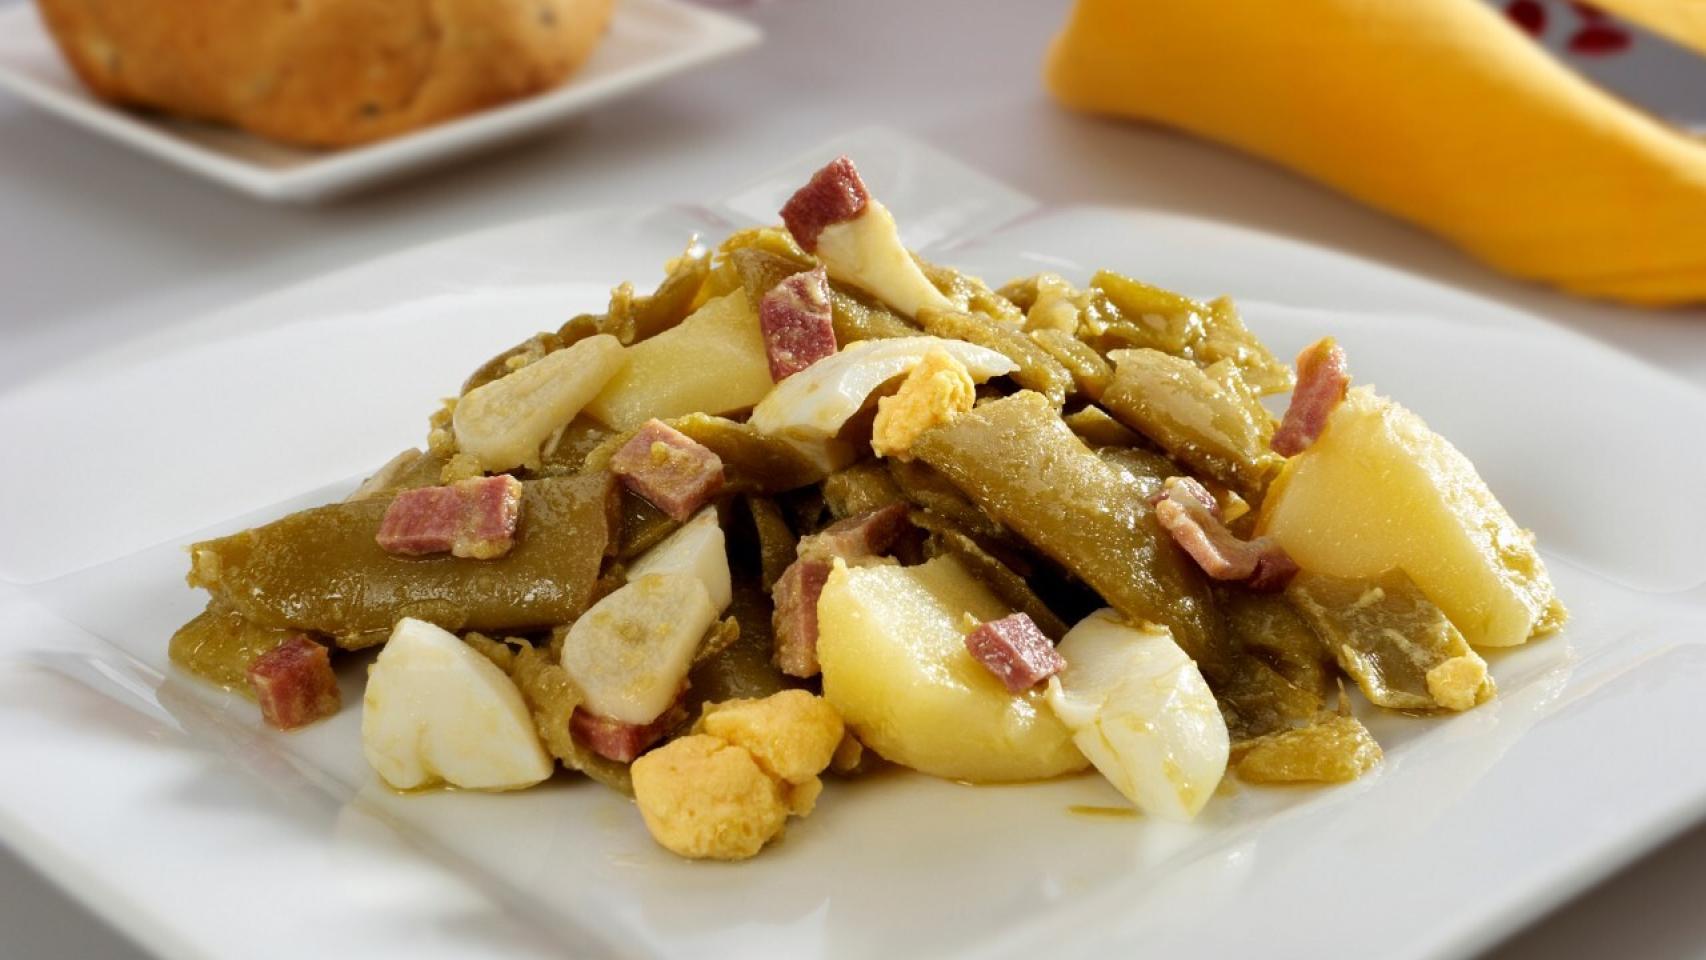 Judías verdes con patatas, bacon y huevo: fáciles, baratas y sabrosas